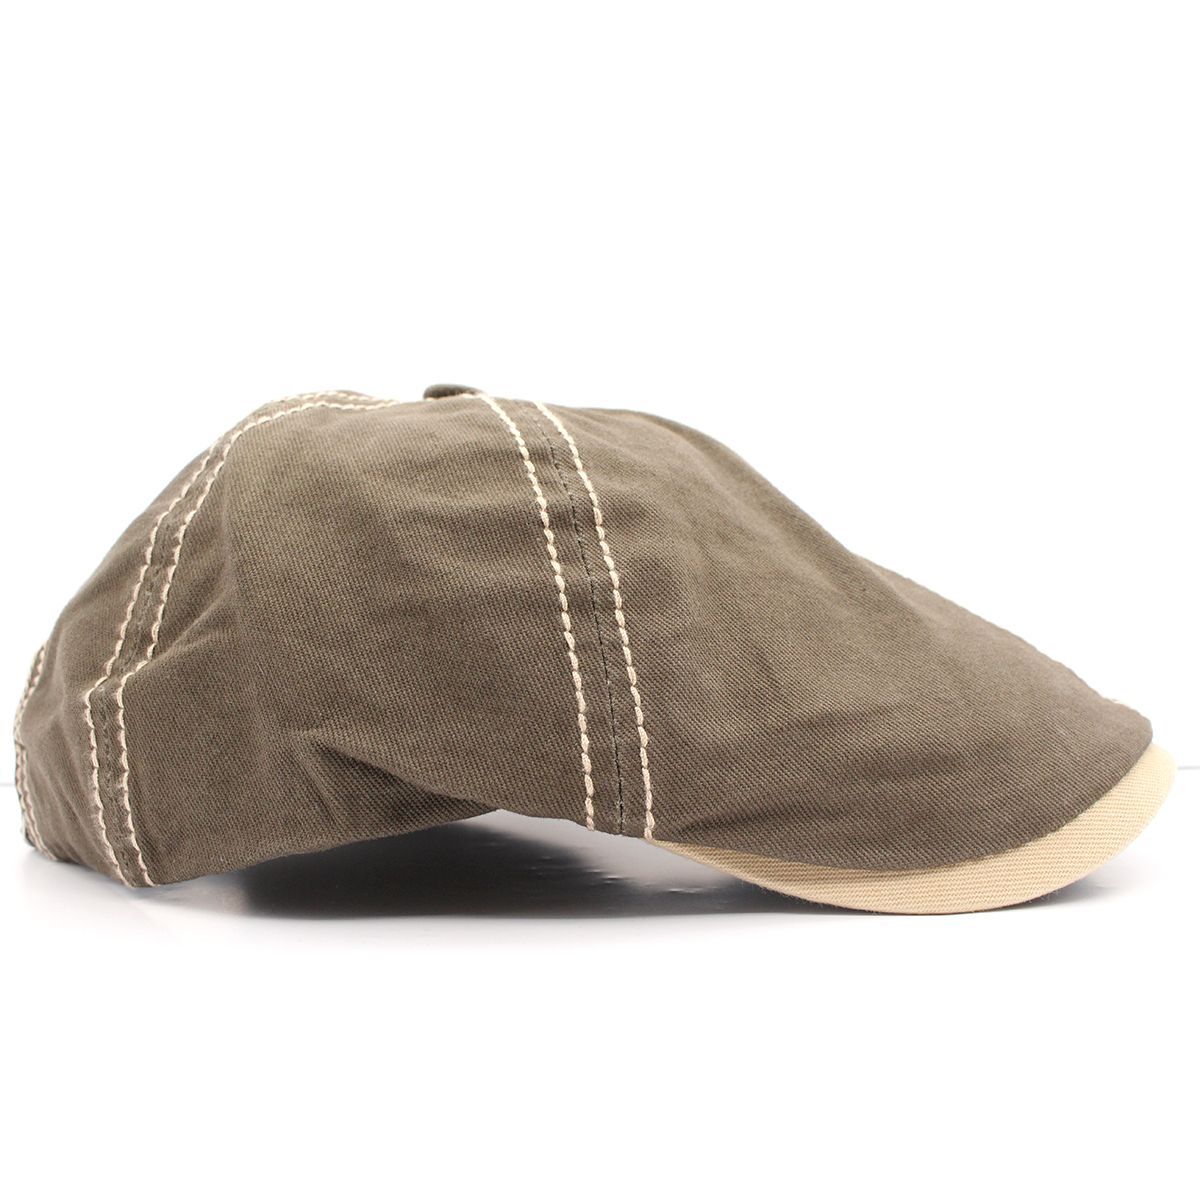 キャスケット帽 インパクトワッペンデザイン 無地 綿キャップ 帽子 56cm~59cm KC49-4